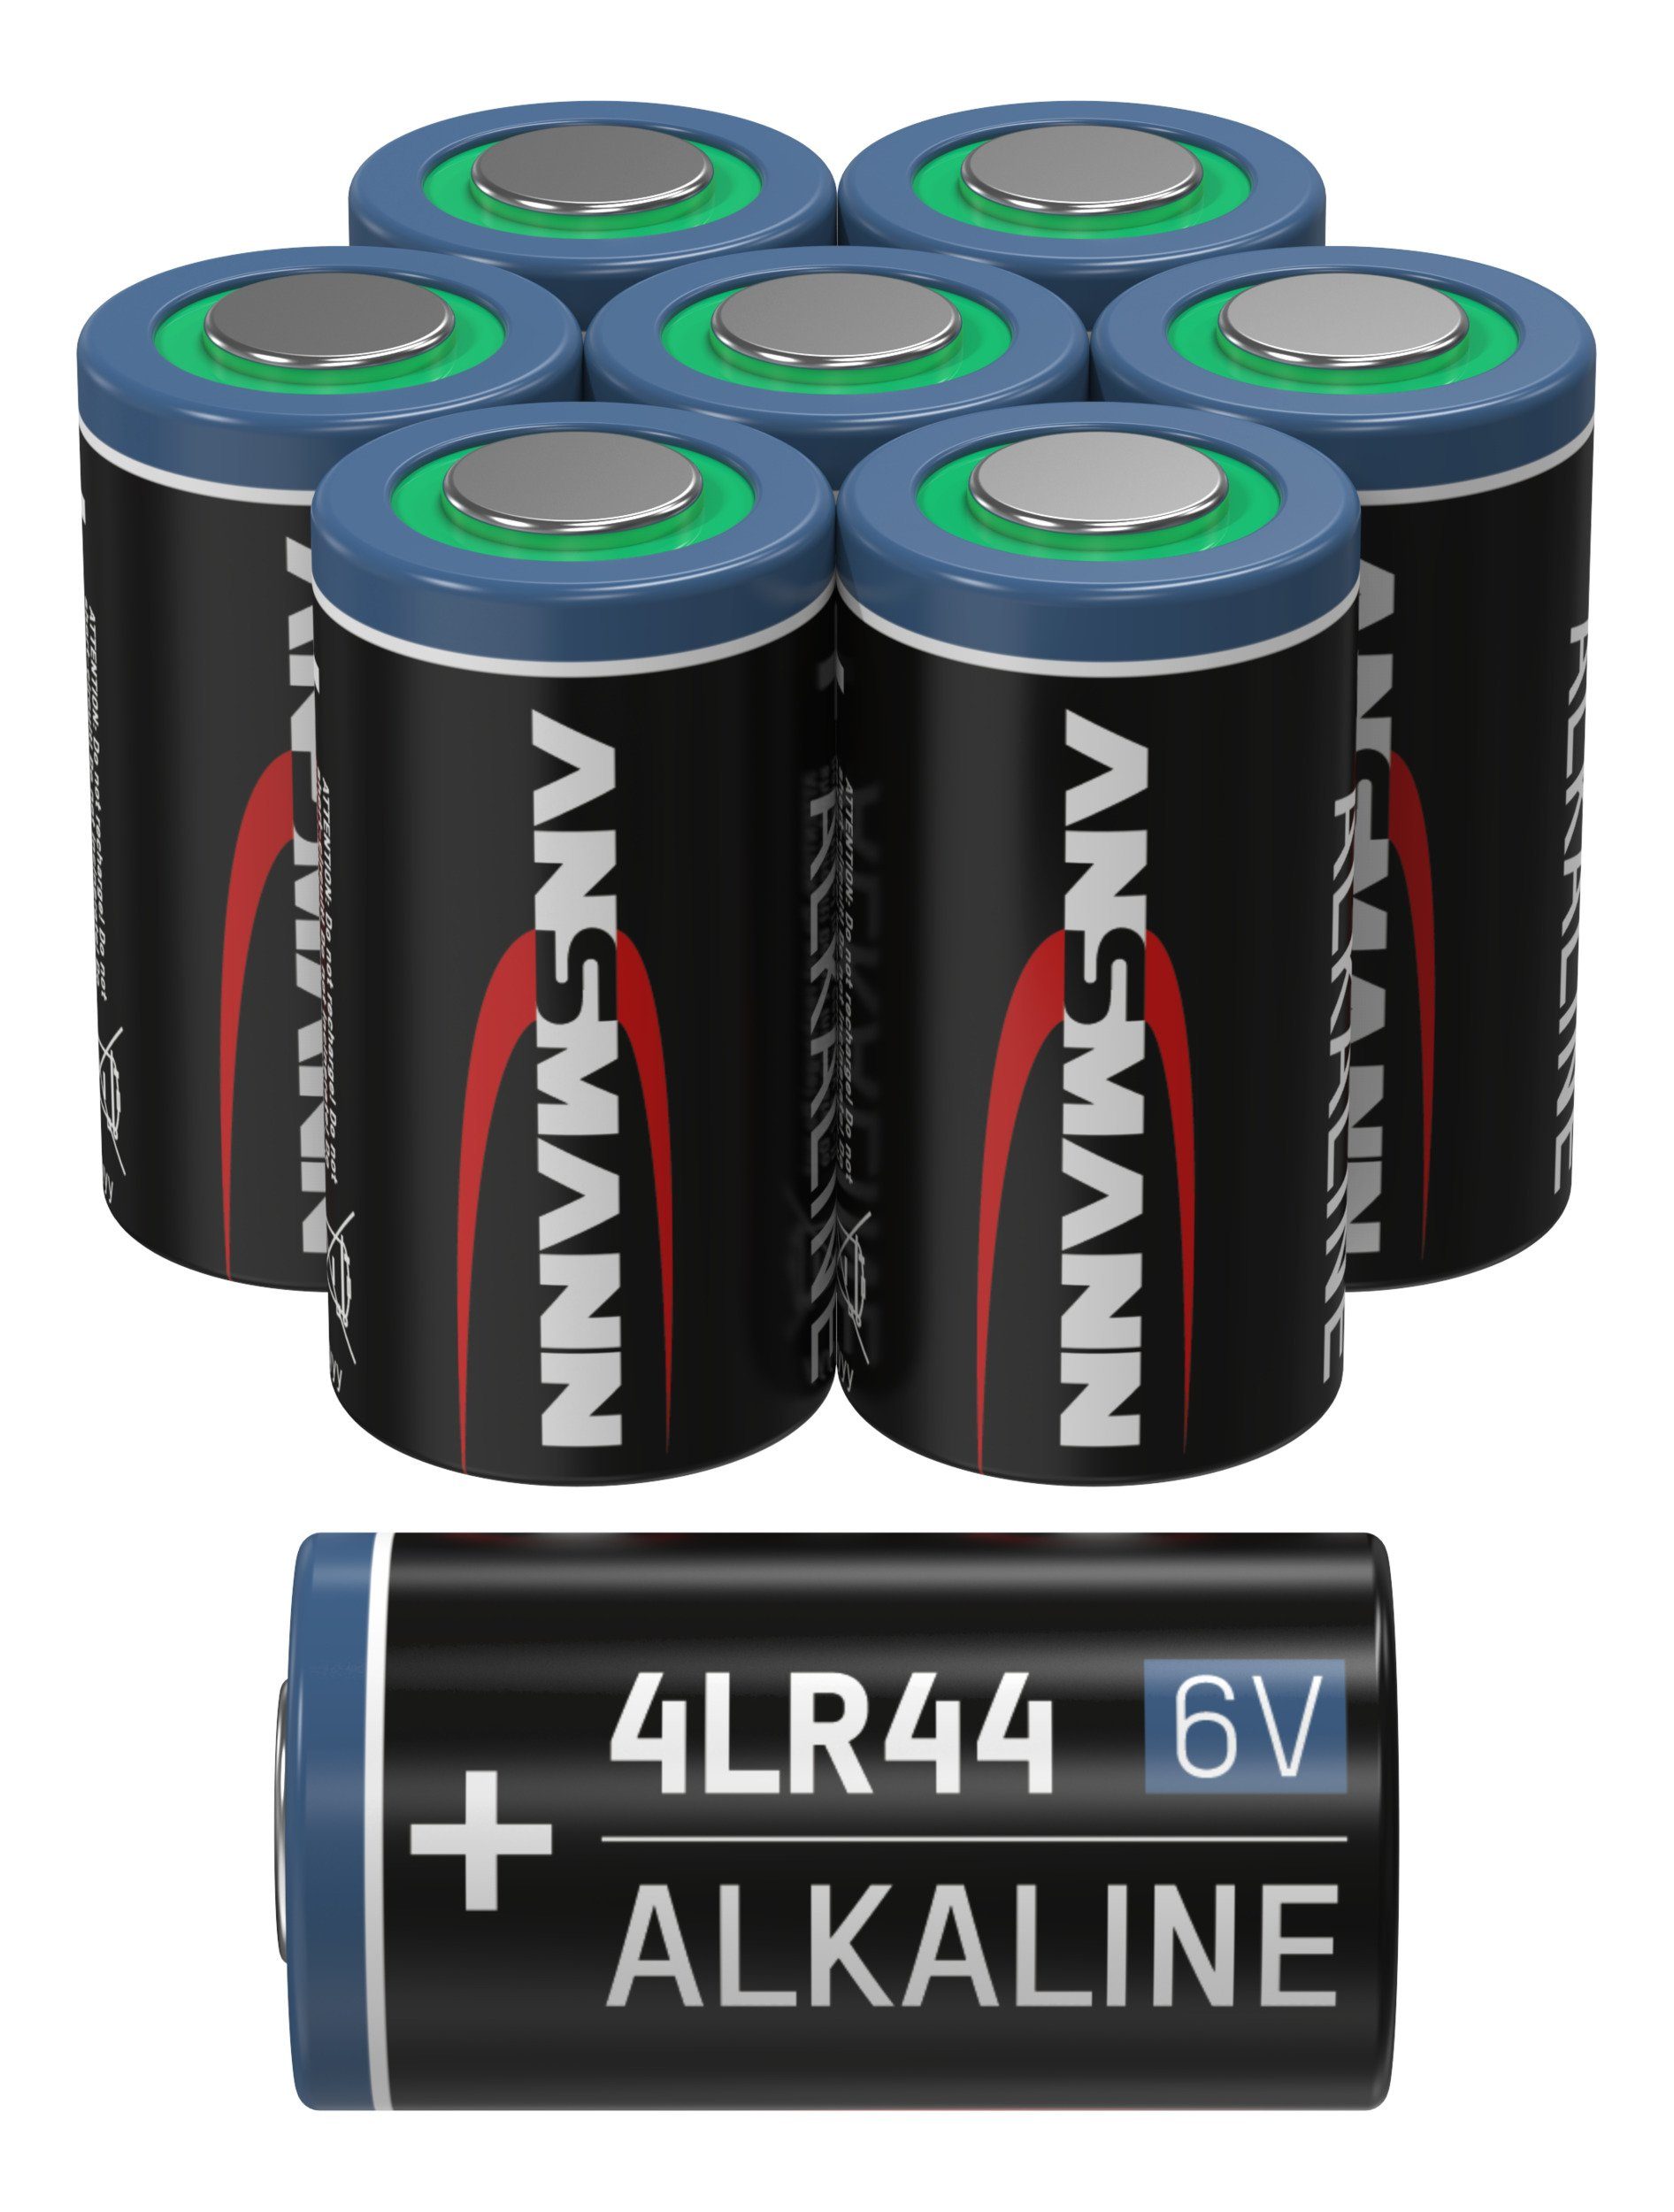 Batterie Pack Spezialbatterie 6V 8er Batterie 4LR44 Alkaline - ANSMANN®